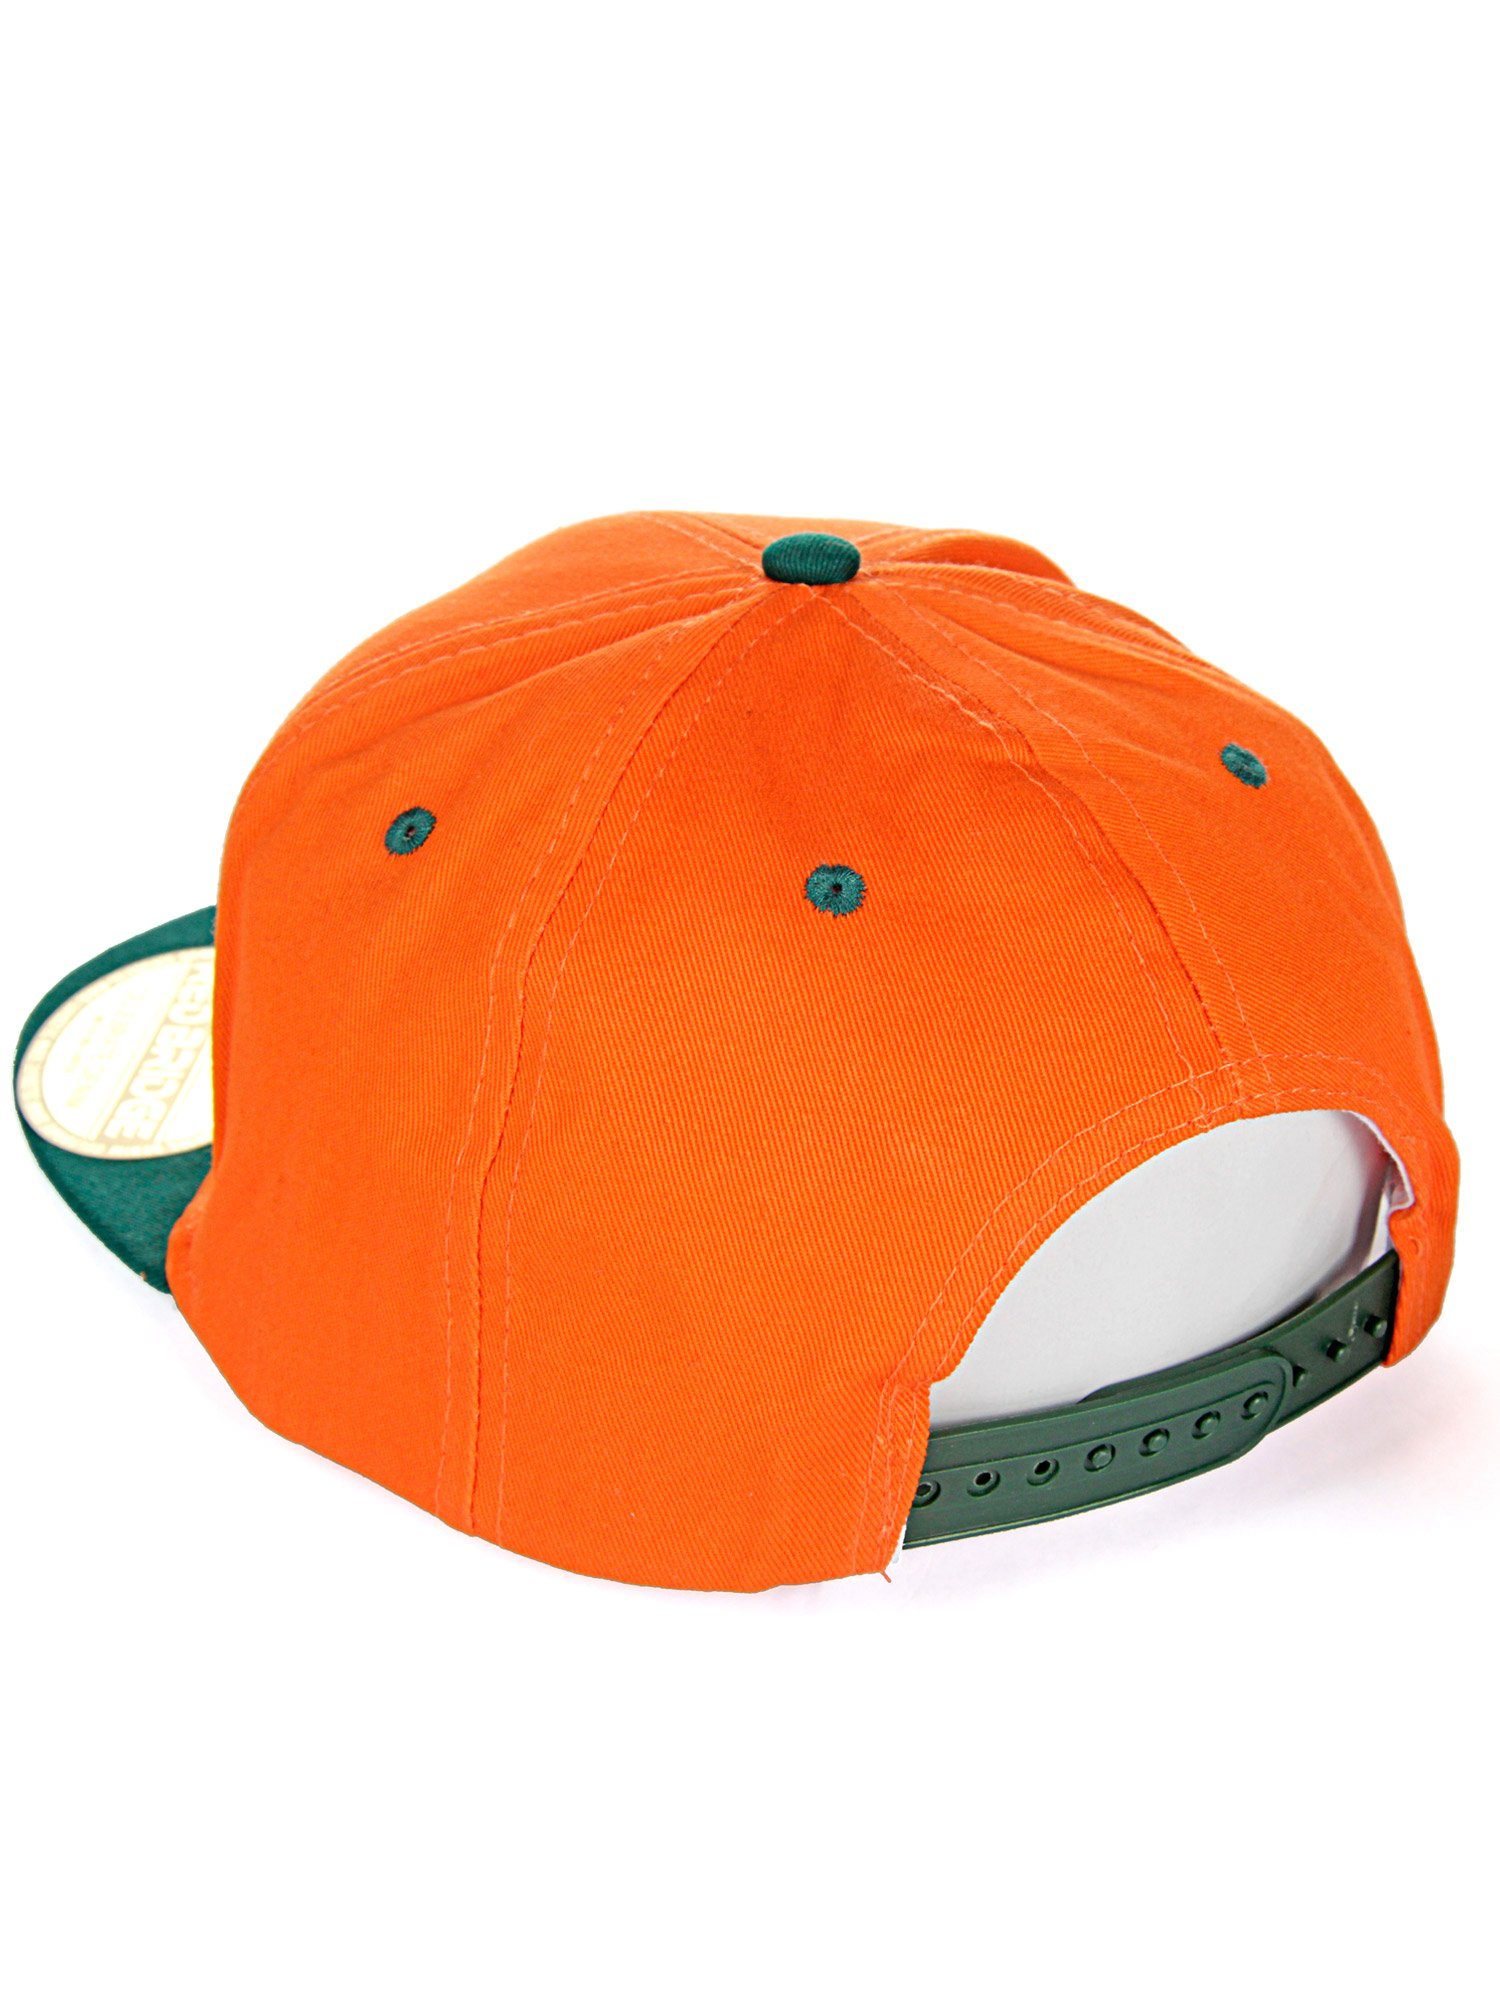 RedBridge Baseball Cap Druckverschluss orange-grün Wellingborough mit